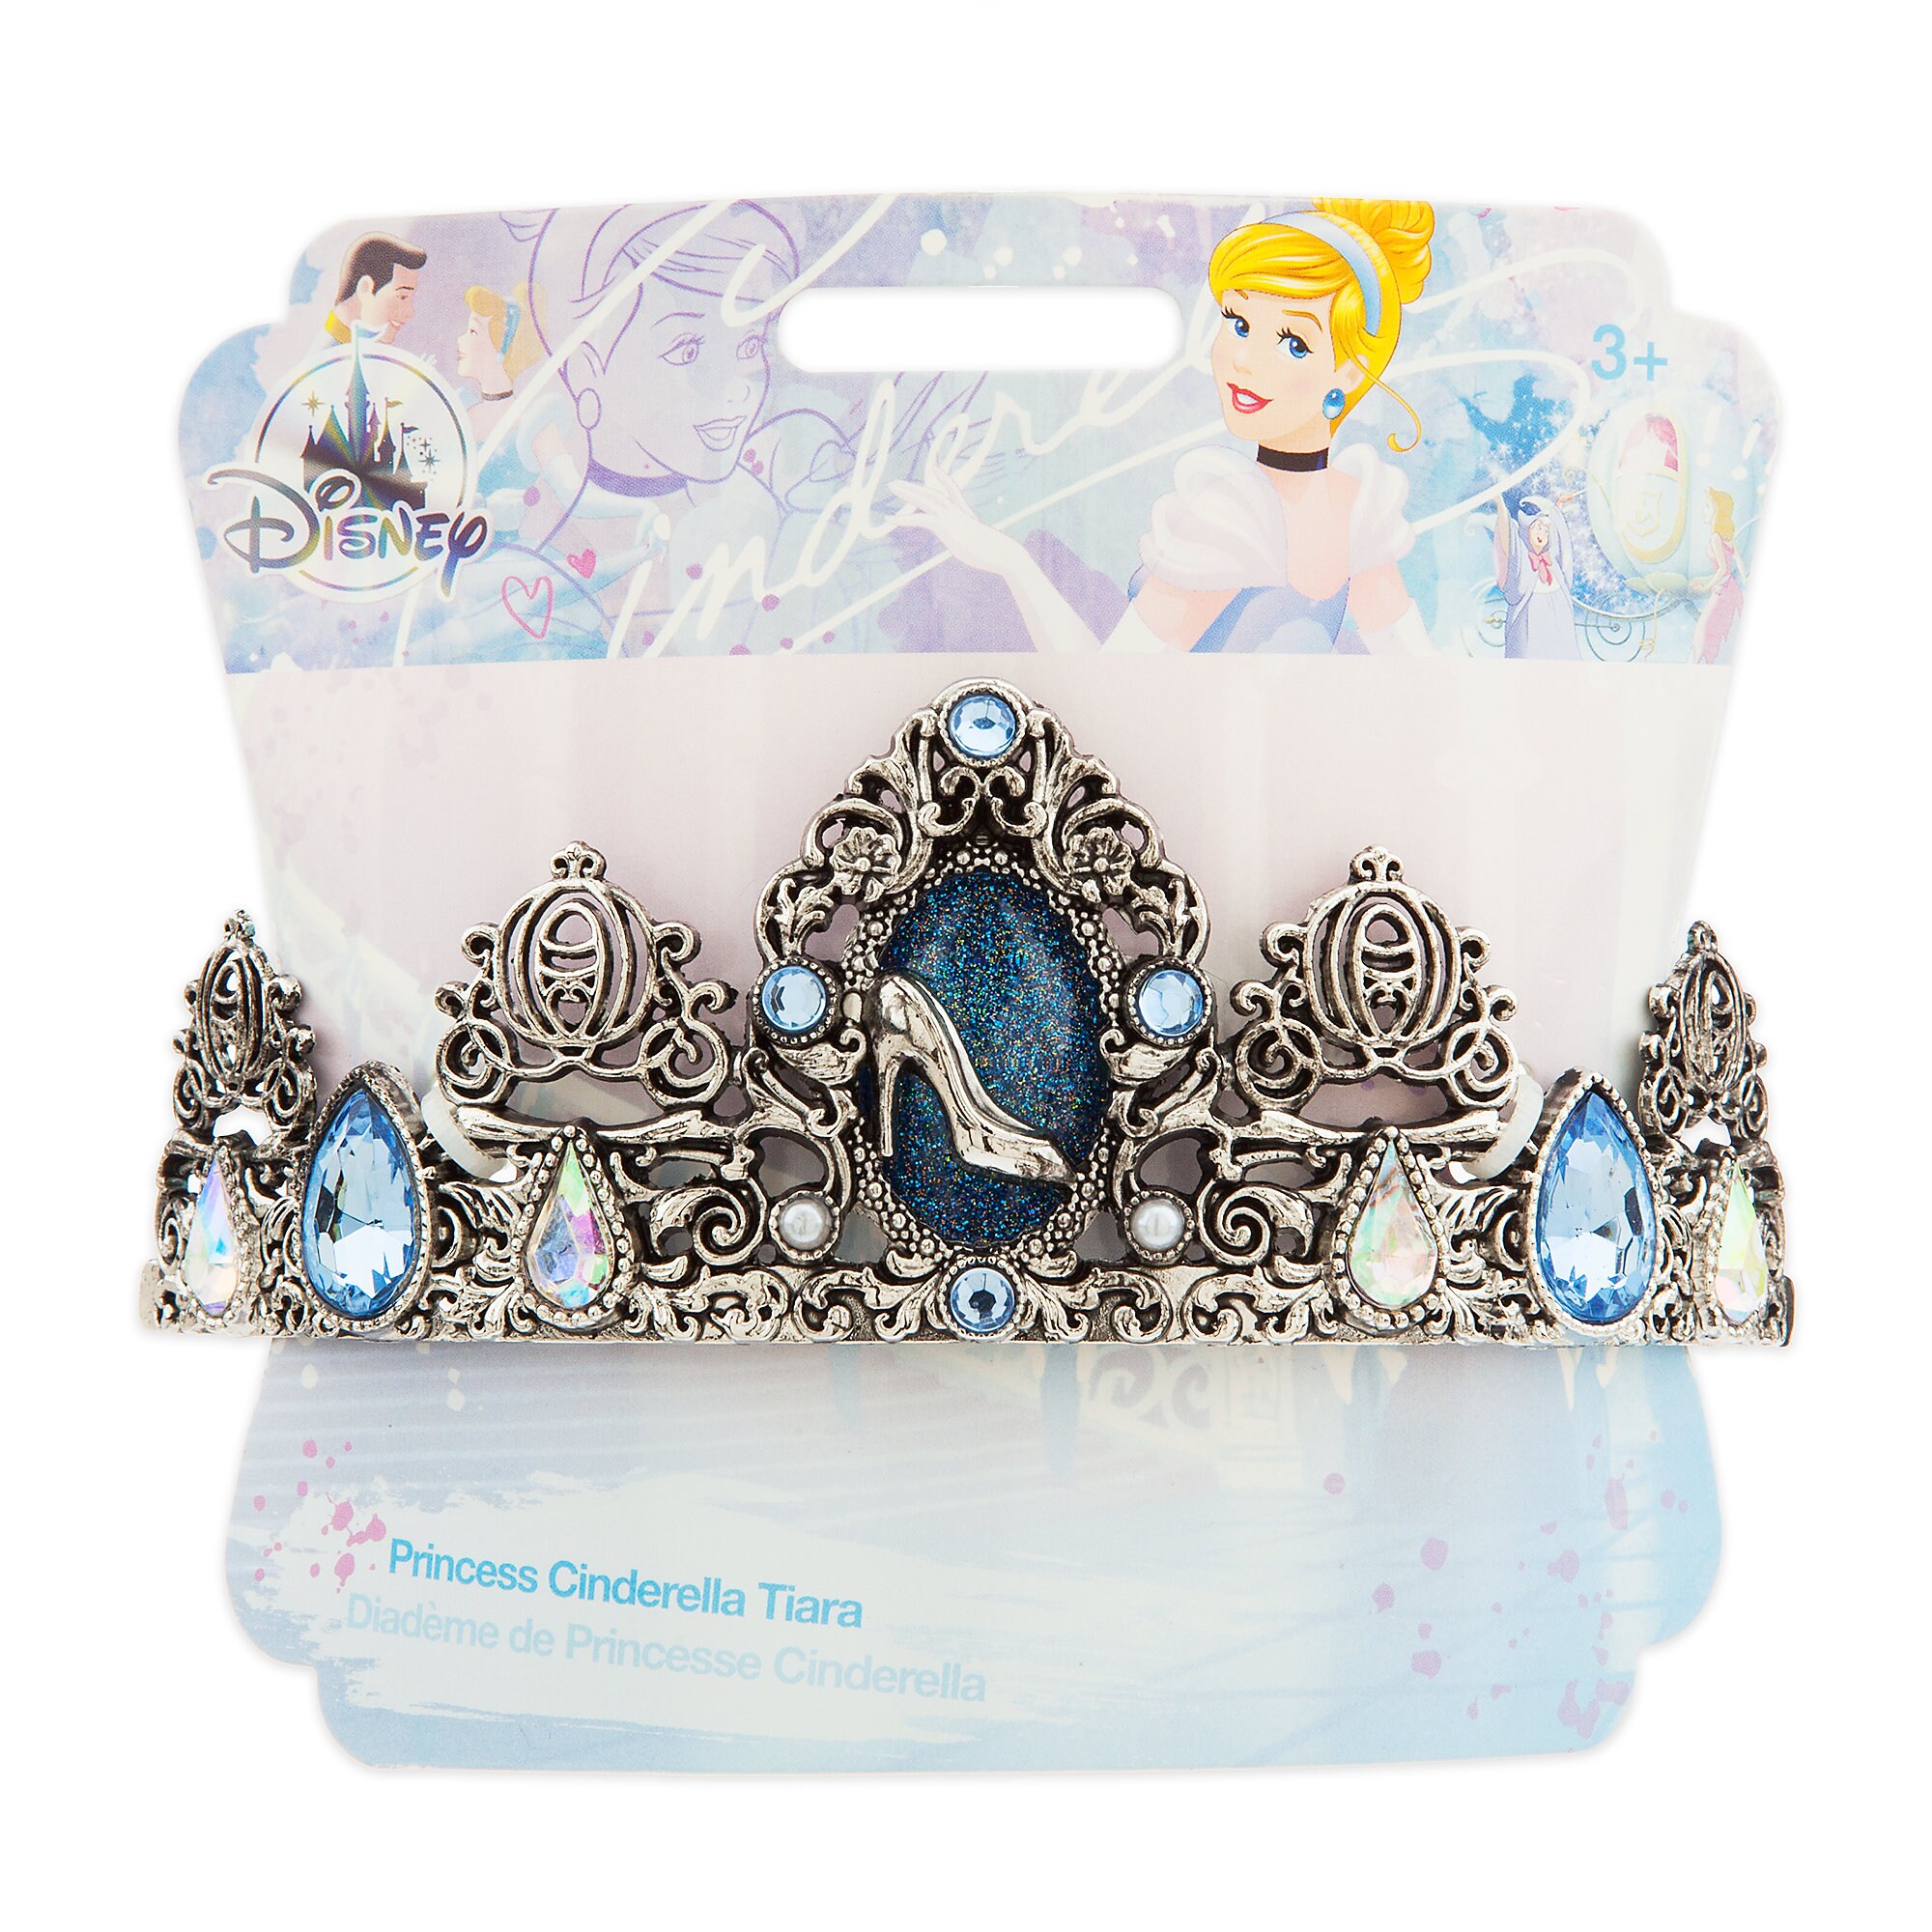 Cinderella Tiara for Kids